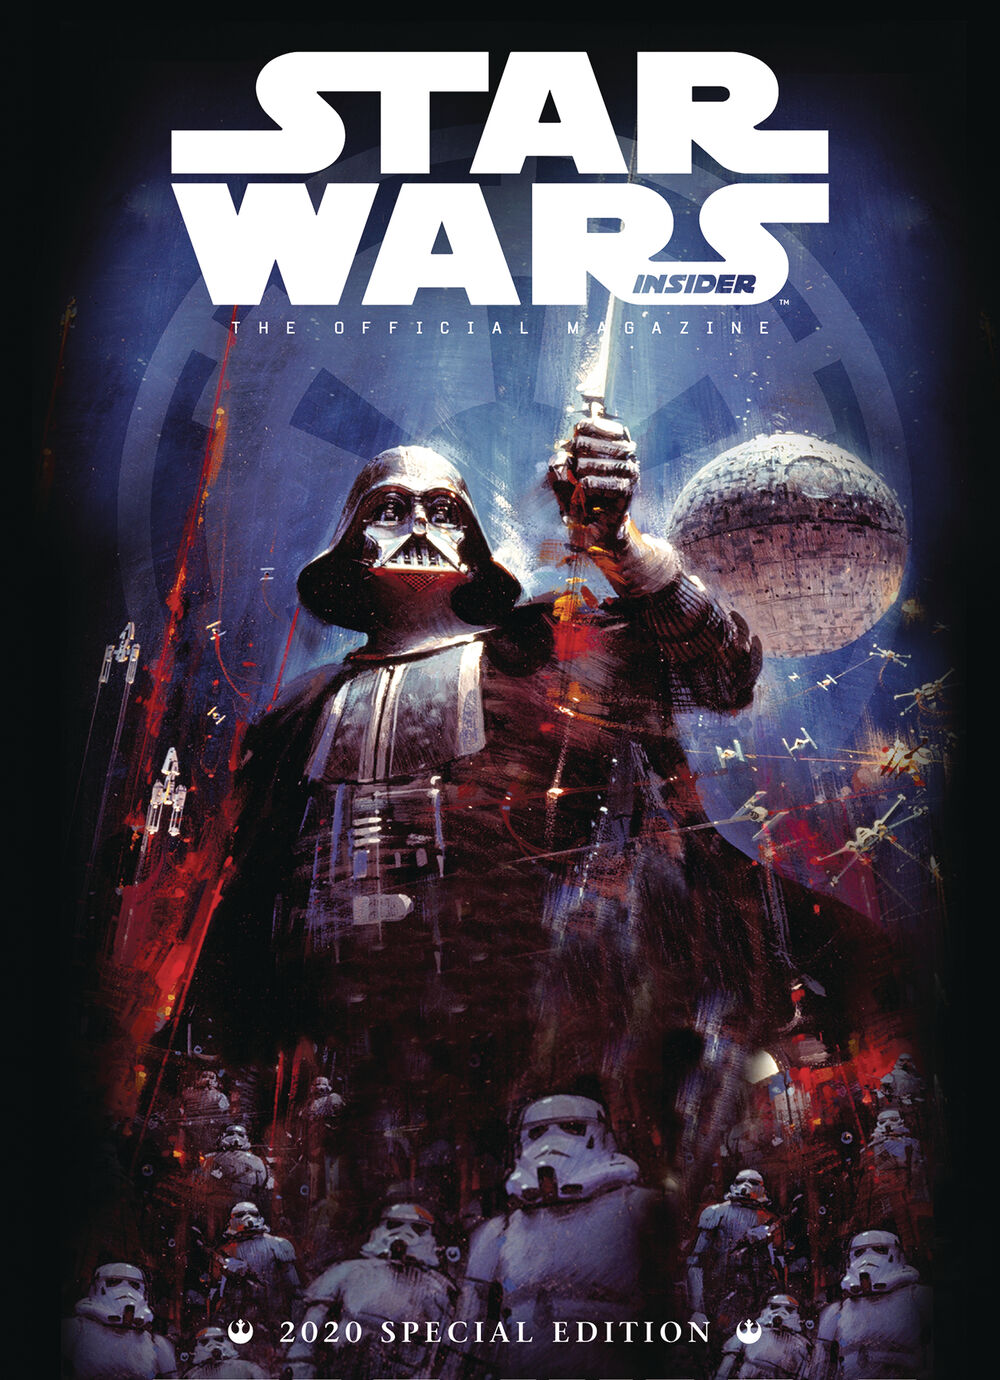 Star Wars Insider Special Edition 2020 December 2019